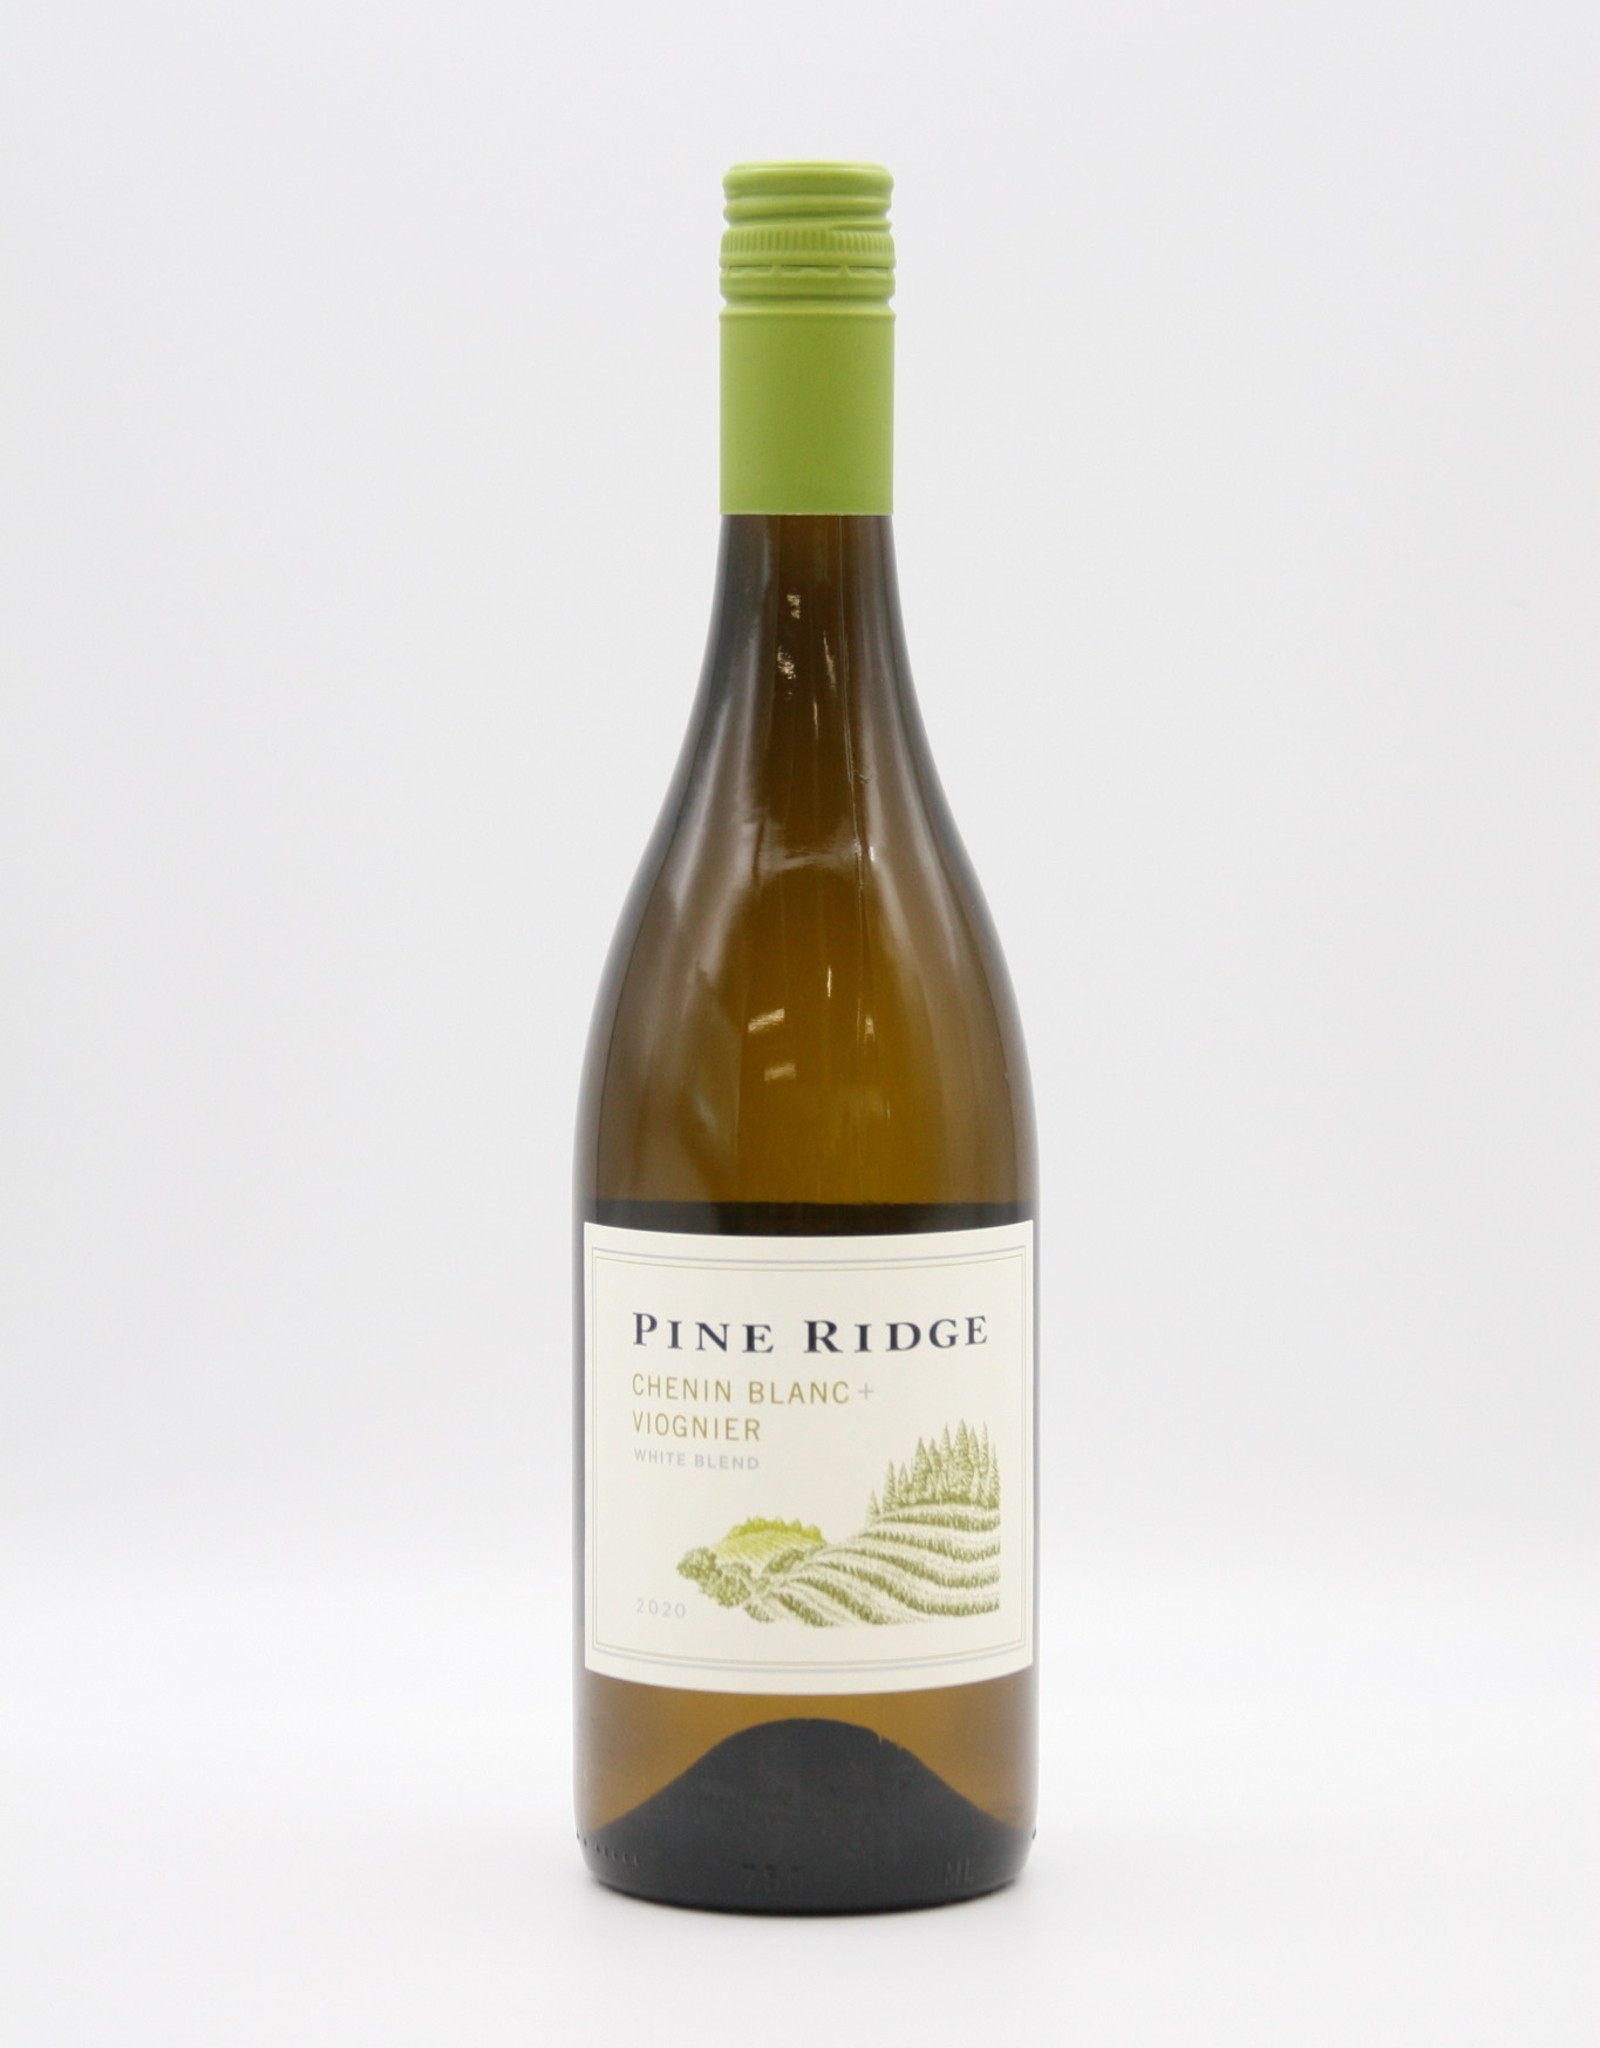 Pine Ridge Chenin Blanc